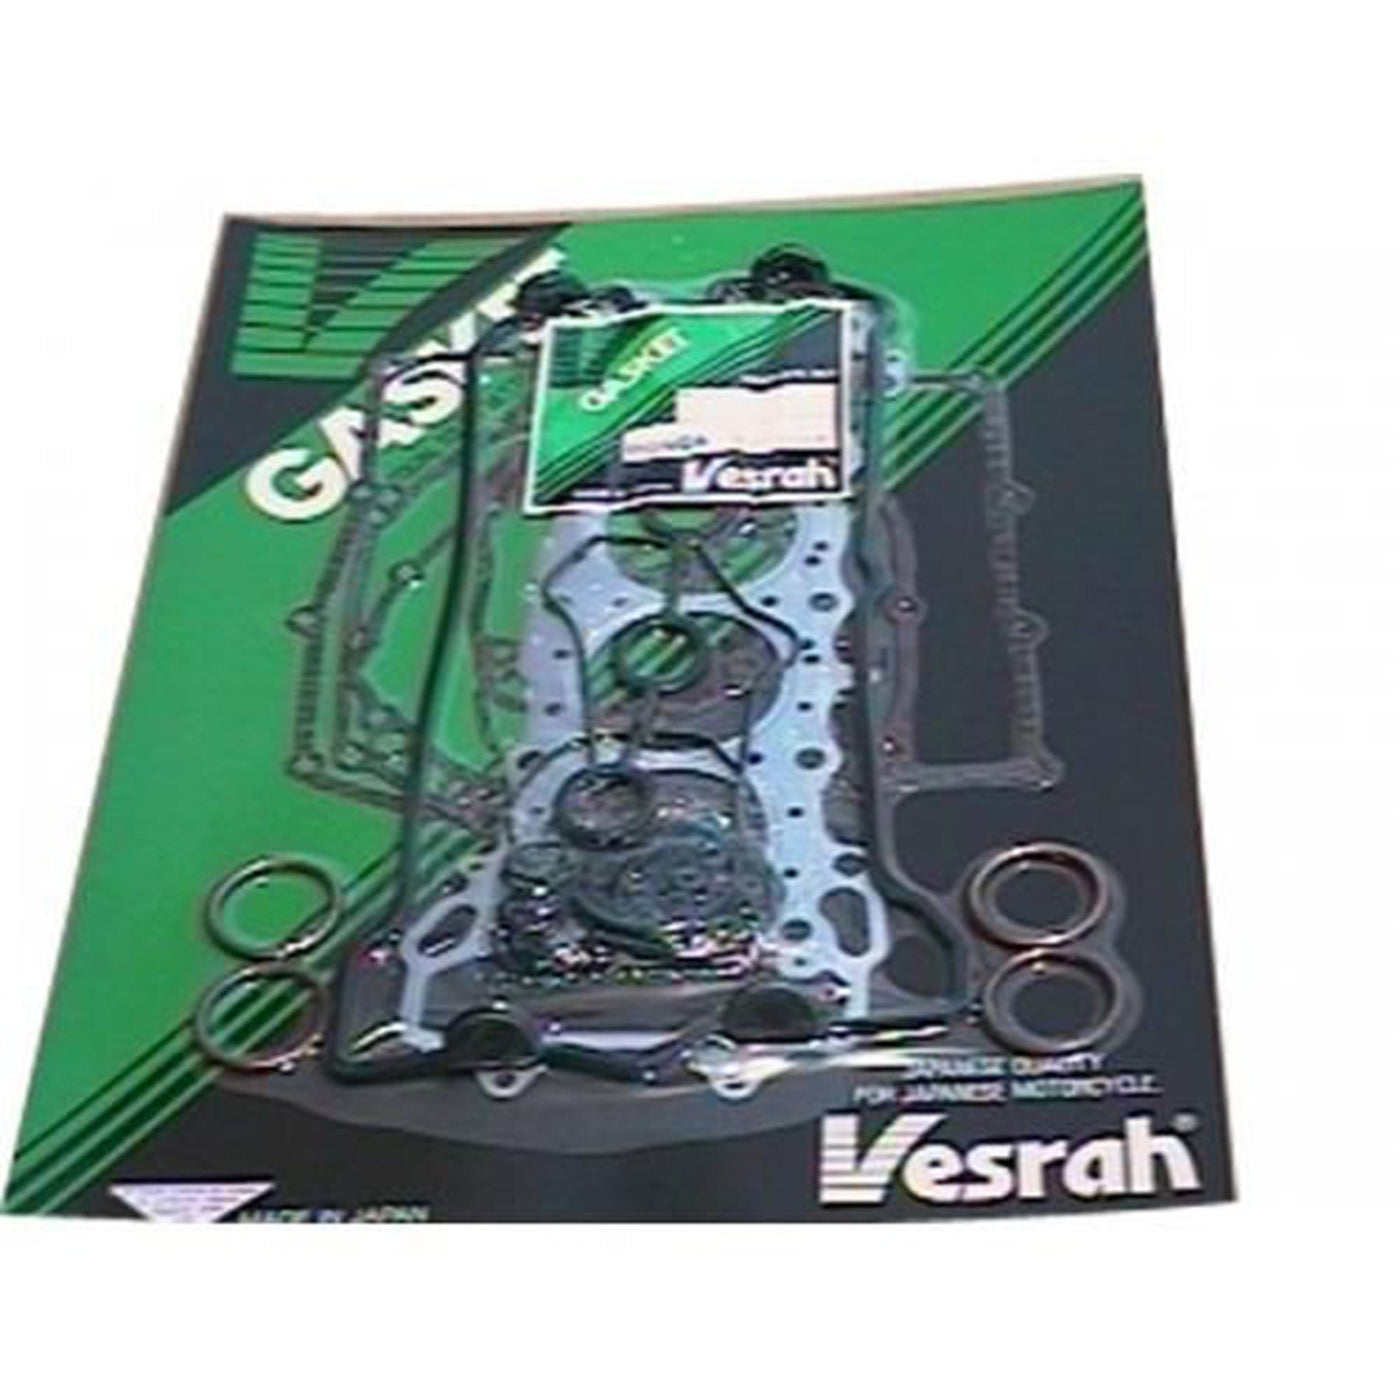 Vesrah VG-2153-M Engine Complete Gasket Set #VG-2153-M